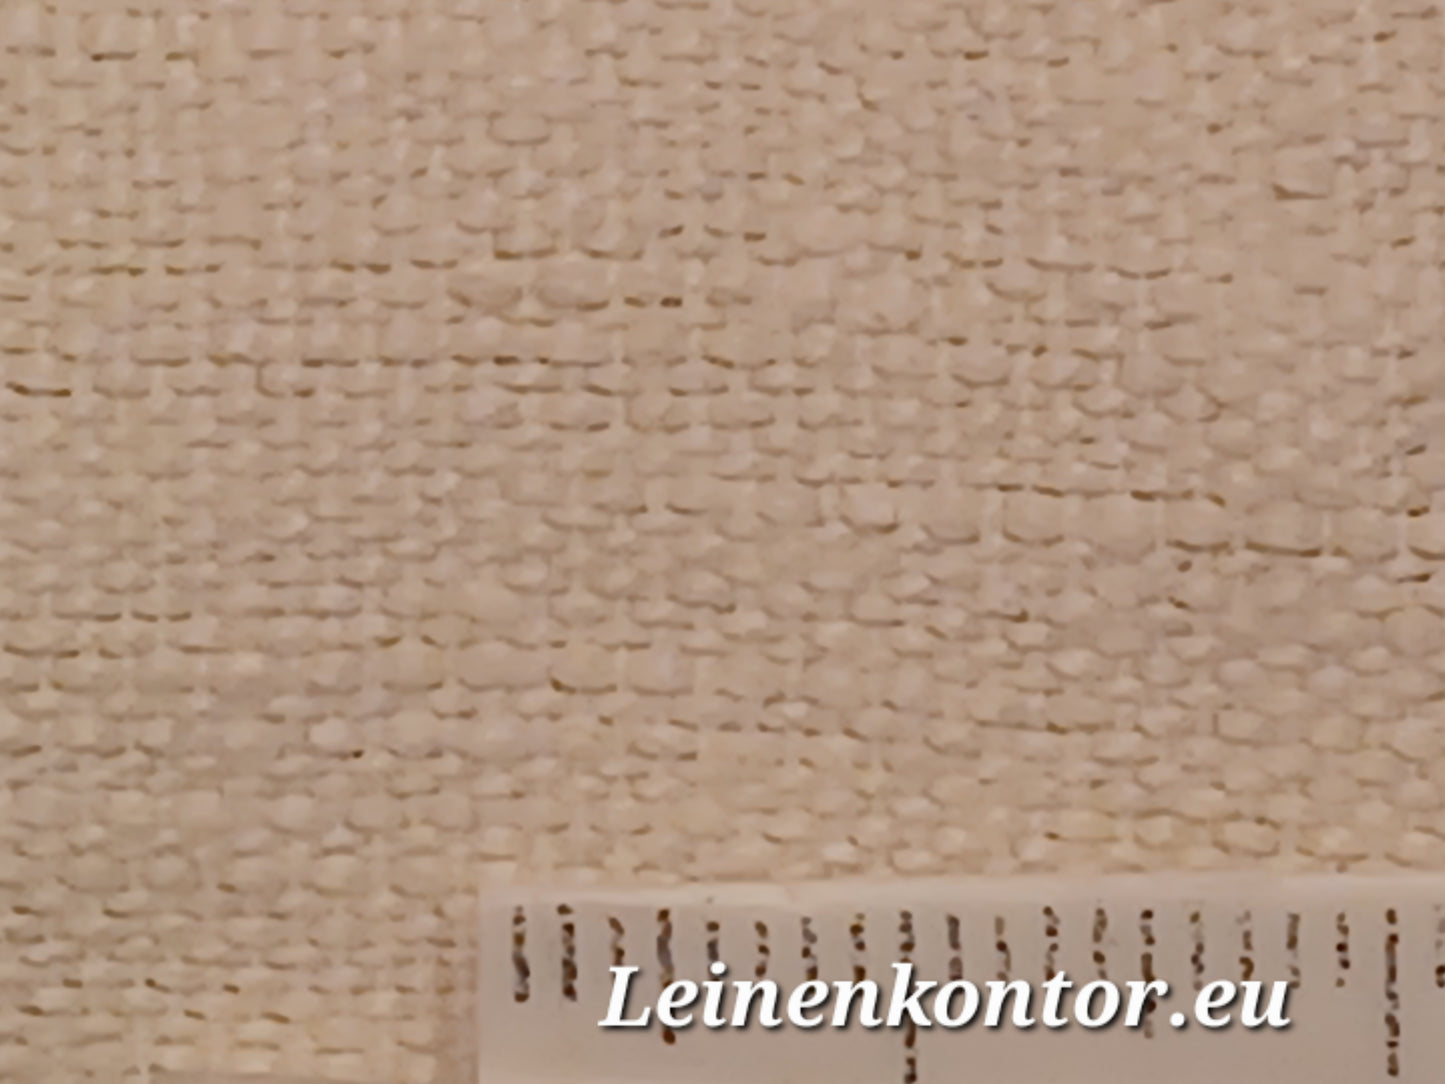 25.59 (18,3m x 0,40m x 0,65mm, 2400gr) Halbleinen Leinen Landhaus Leinenstoff Leinenballen